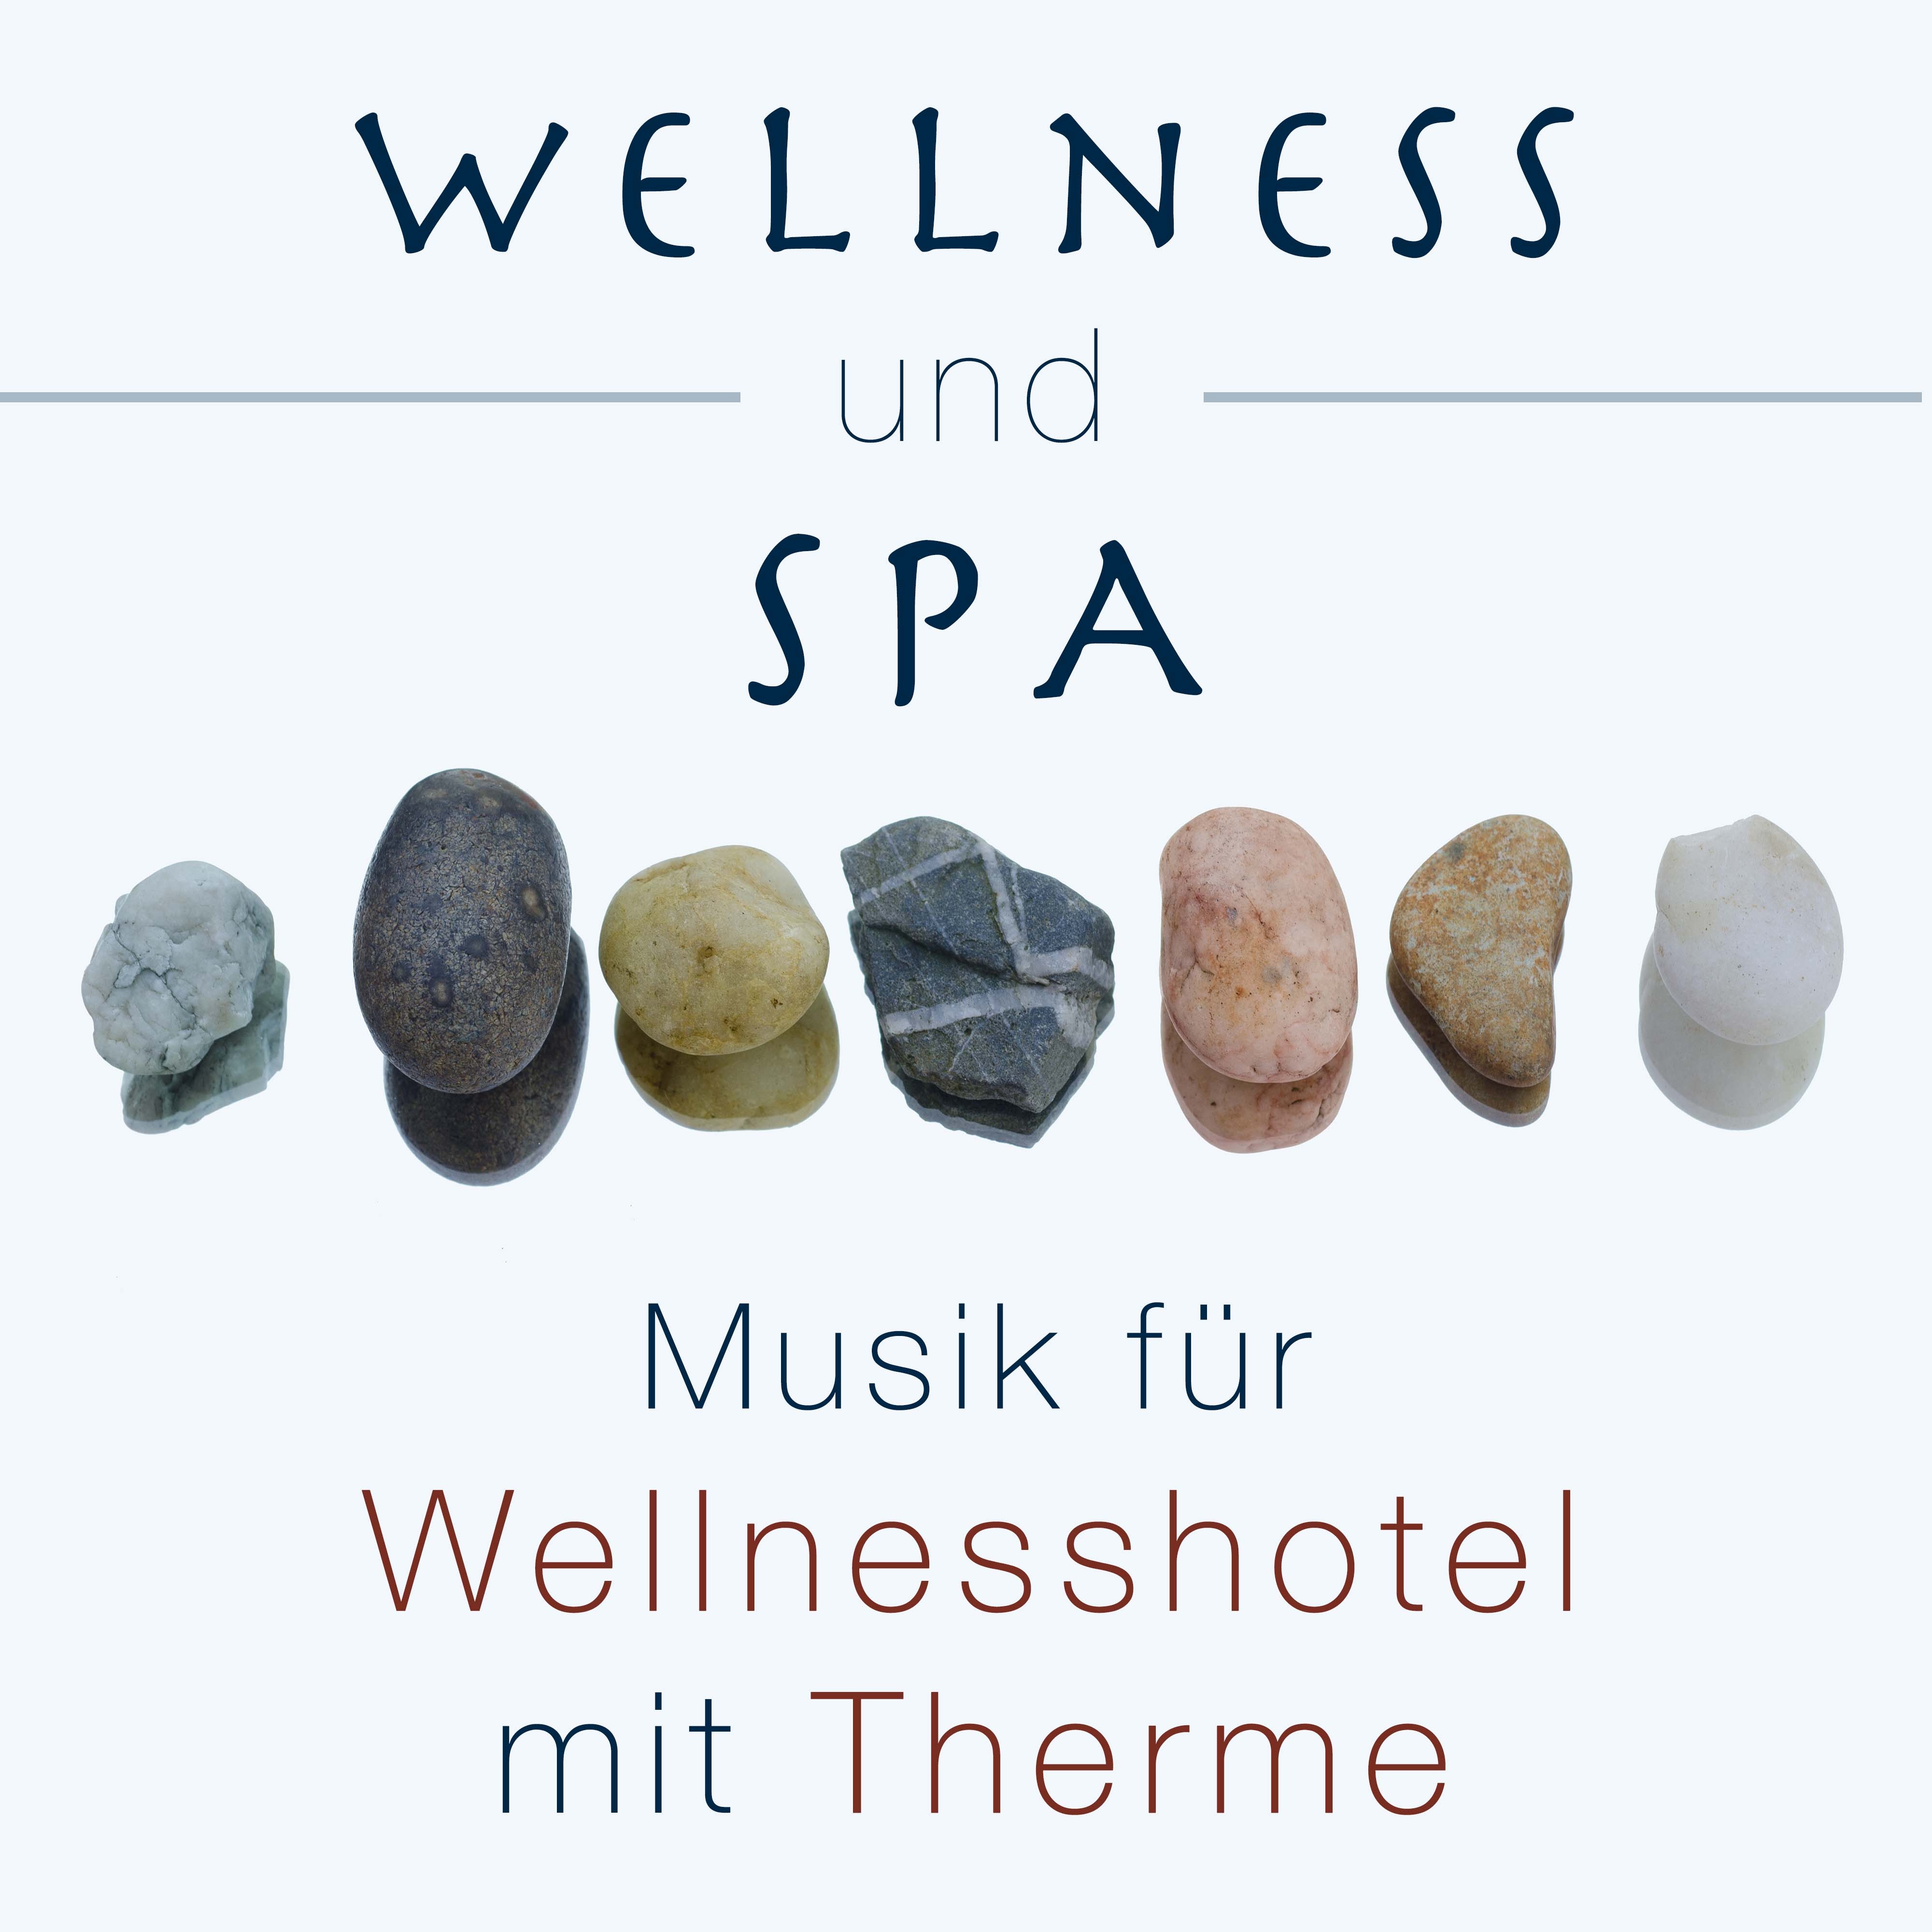 Wellness und Spa: Musik für Wellnesshotel mit Therme